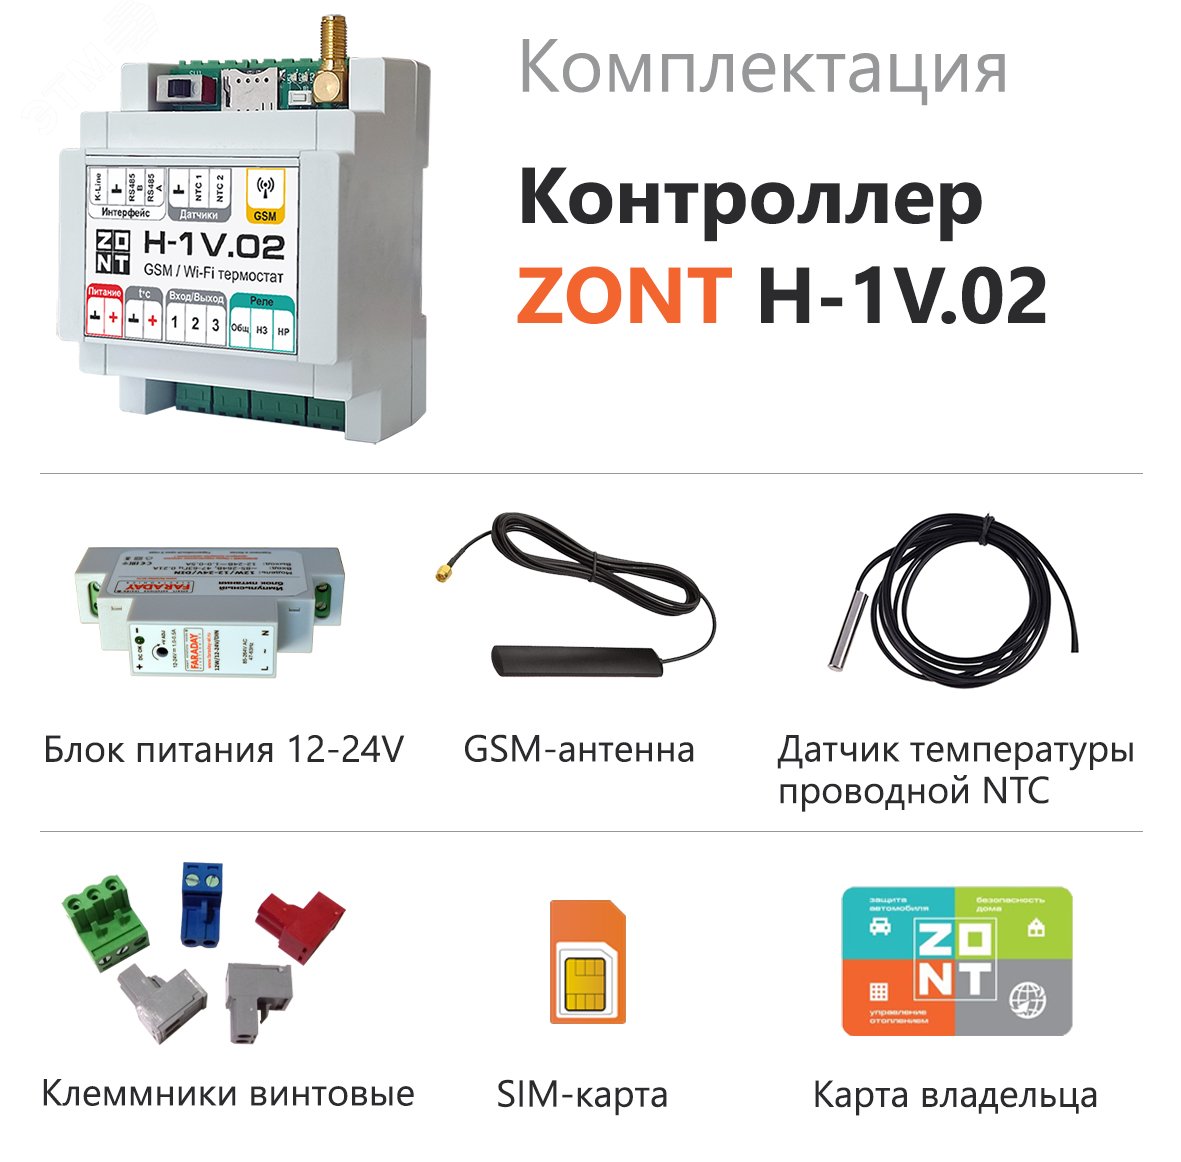 Контроллер ZONT H-1V.02 отопительный GSM / Wi-Fi на стену и DIN-рейку ML00005454 Zont - превью 3